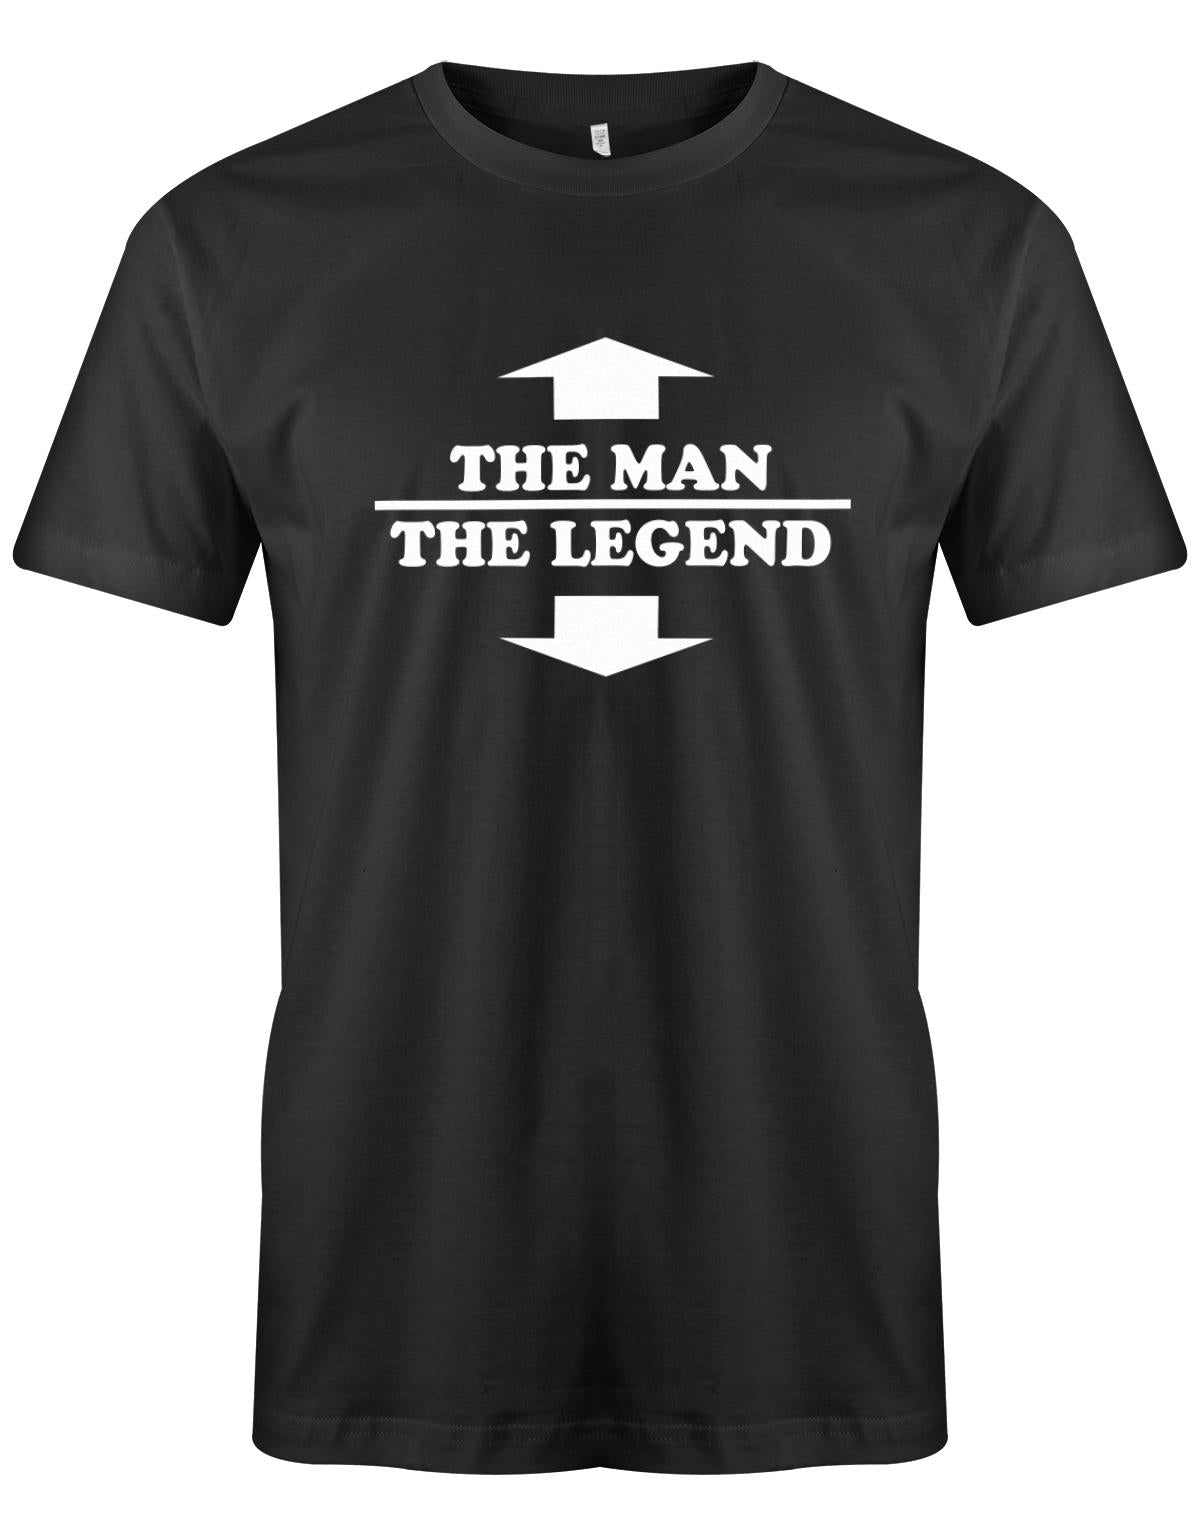 The-Man-the-legend-hereren-Shirt-schwarz